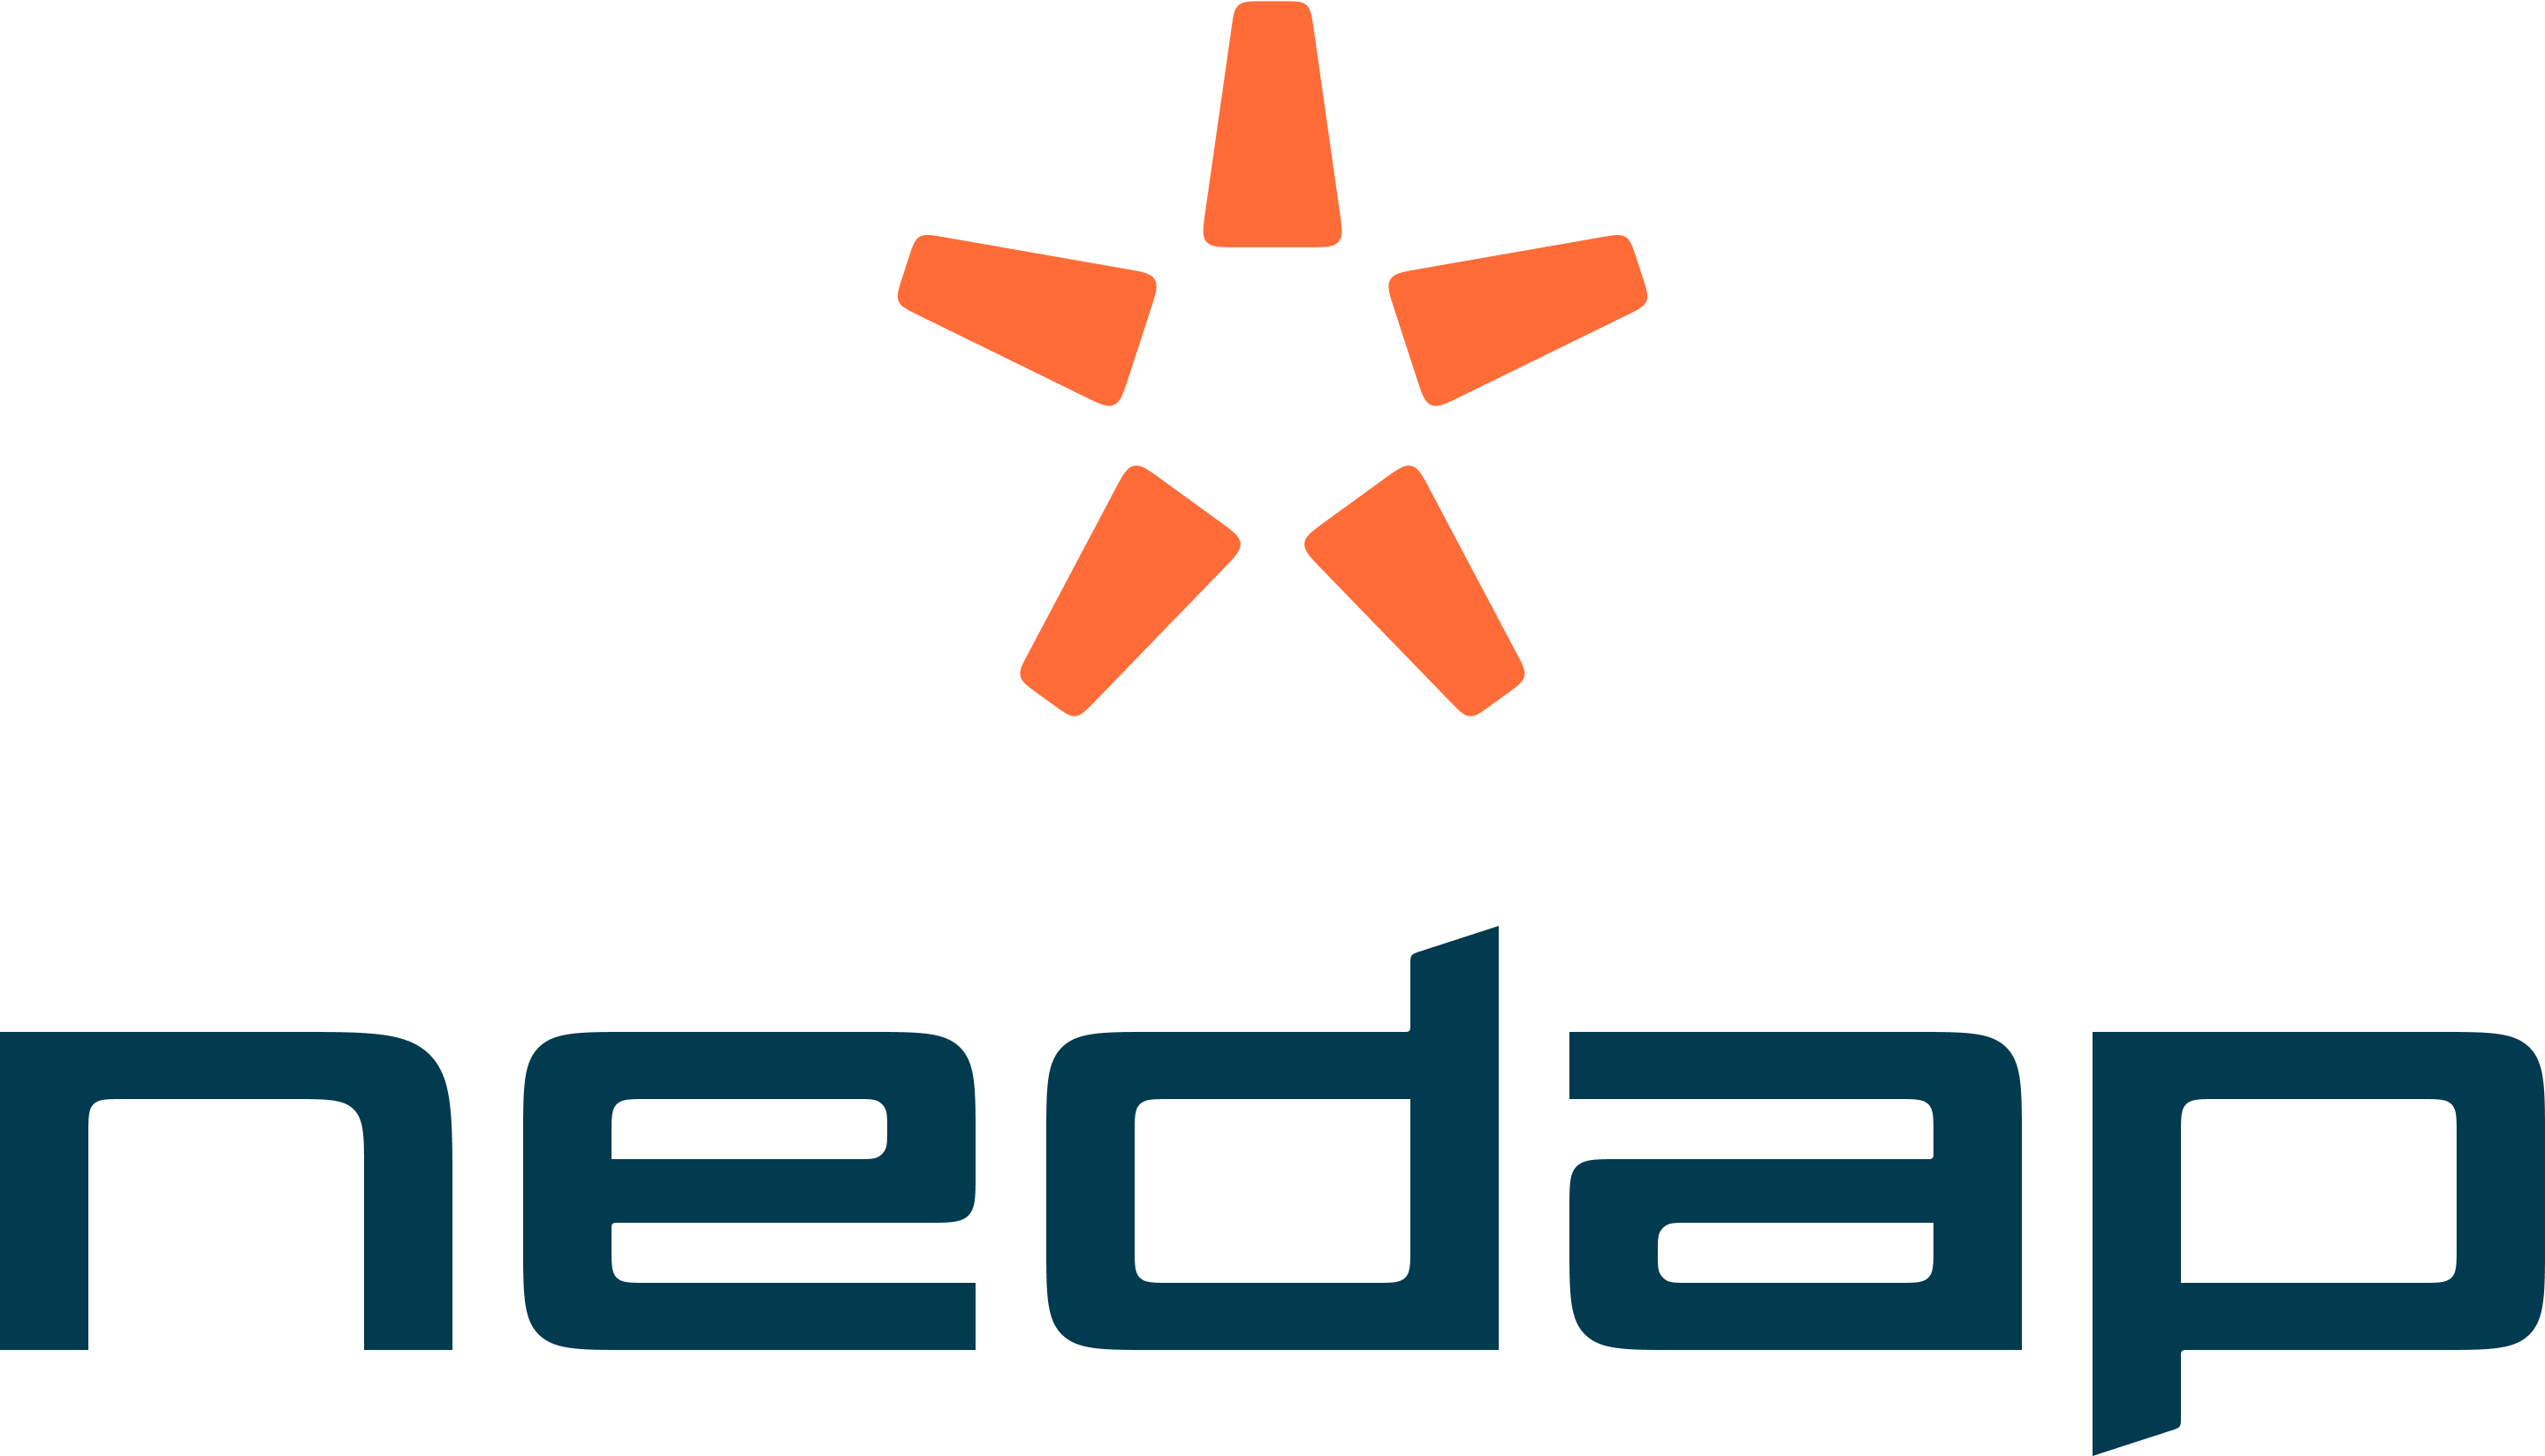 Logo Nedap